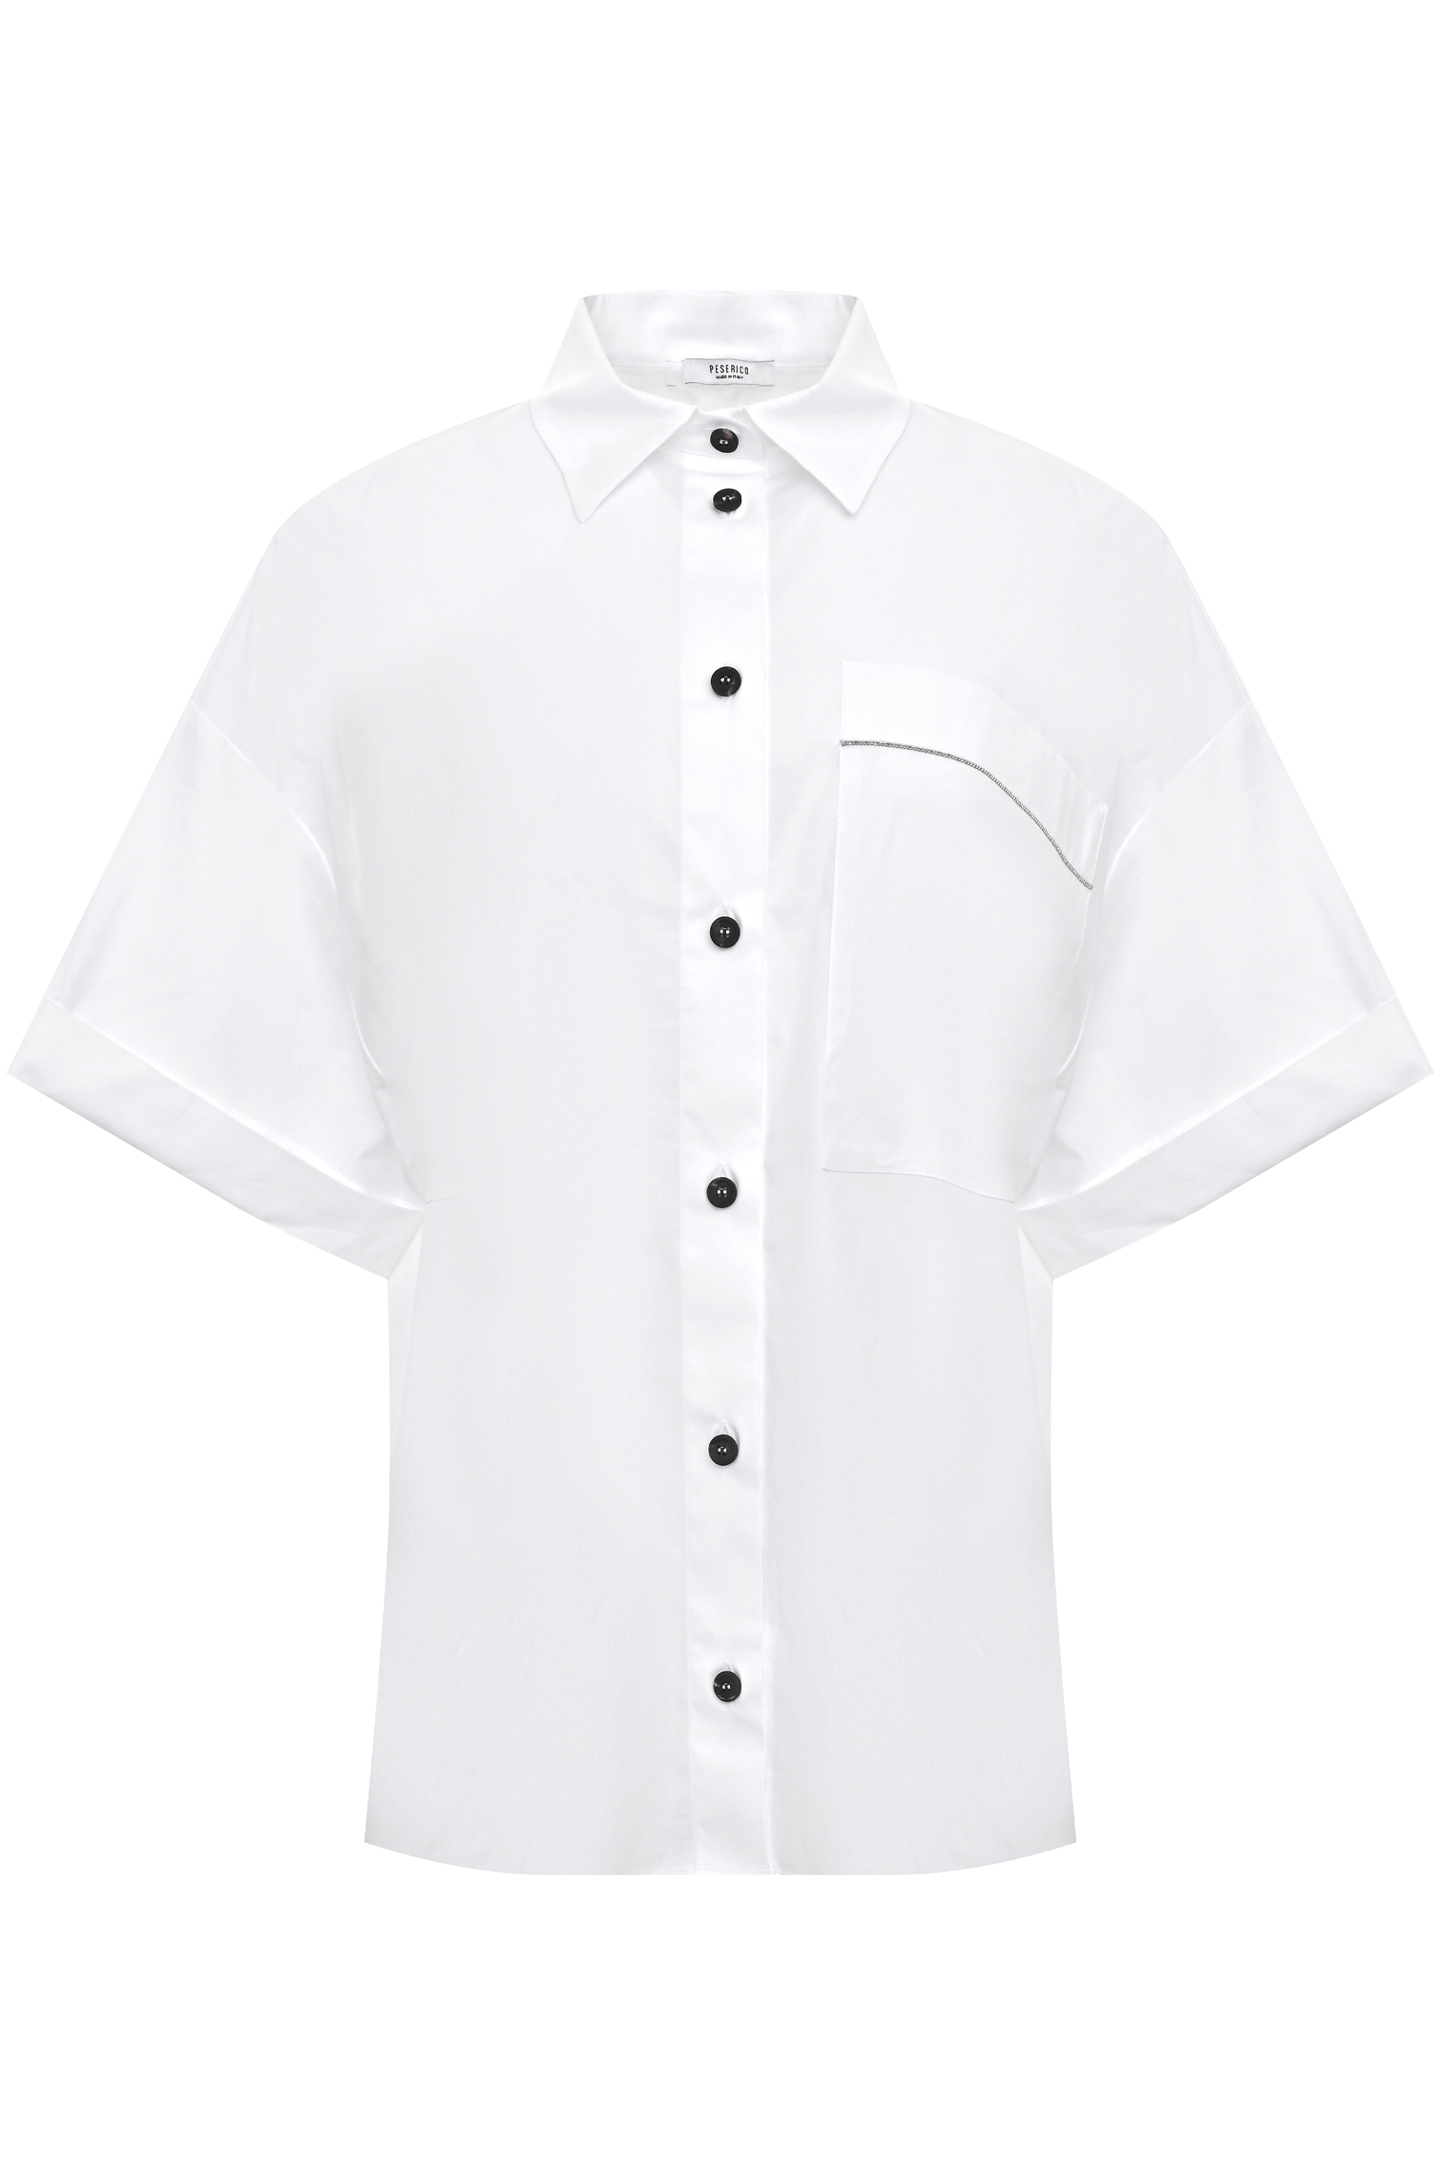 Блуза PESERICO S06548 08928, цвет: Белый, Женский